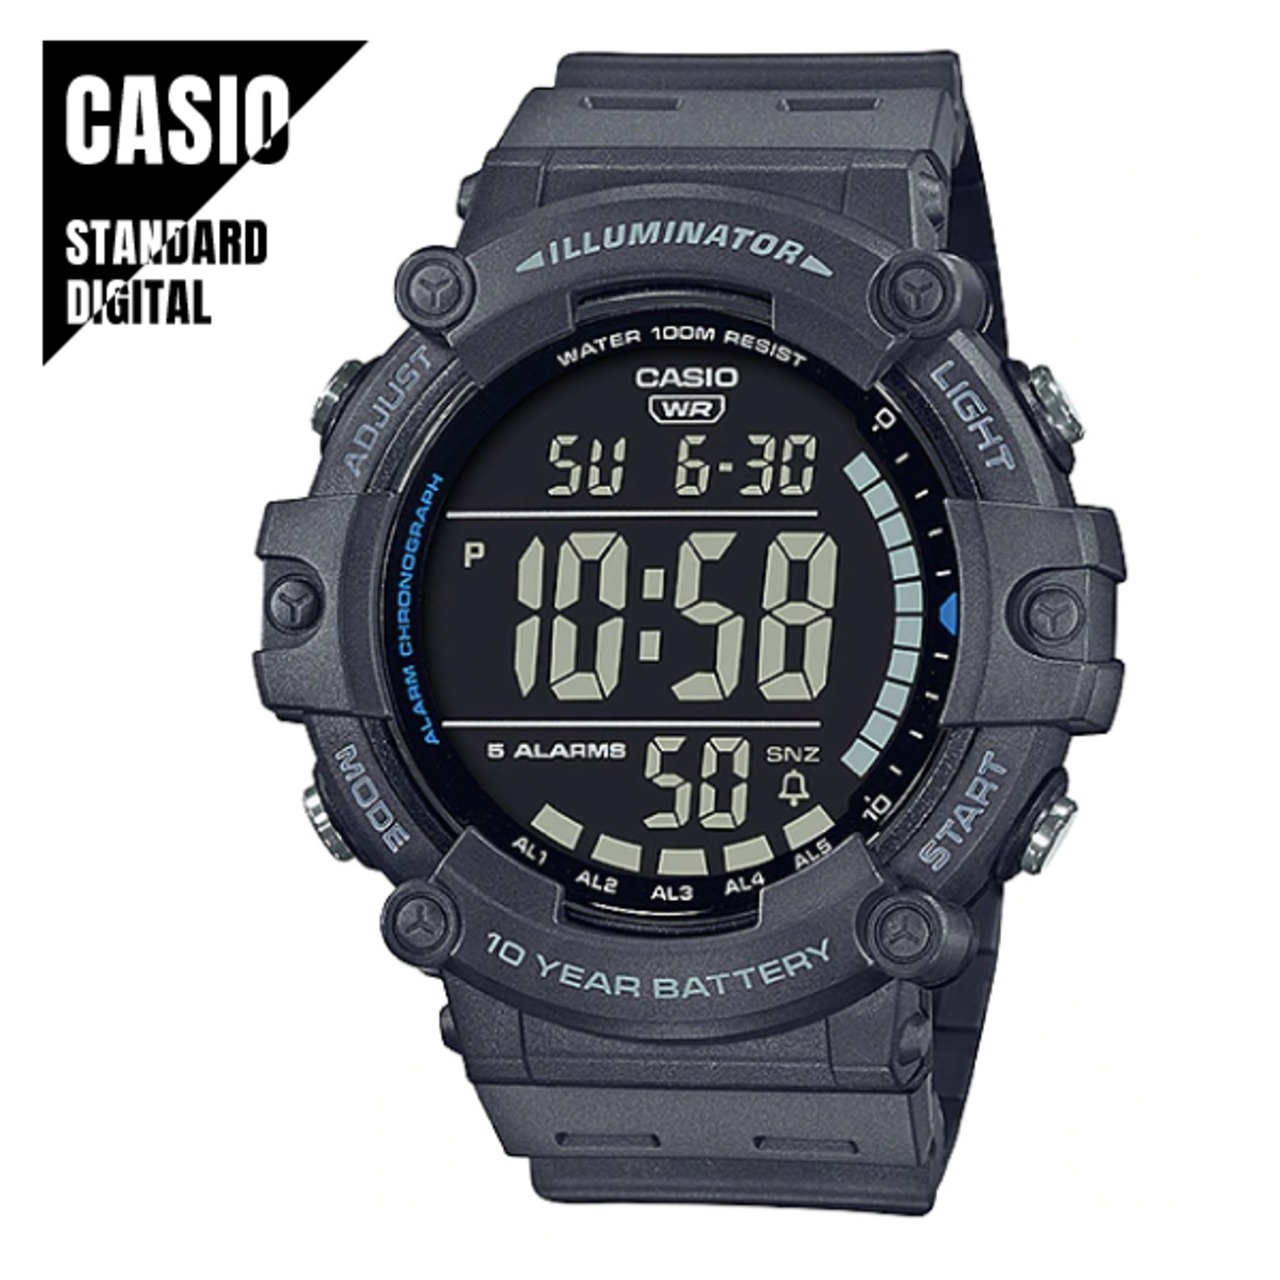 【即納】CASIO STANDARD カシオ スタンダード デジタル チプカシ チープカシオ グレー AE-1500WH-8B 腕時計 メンズ 送料無料